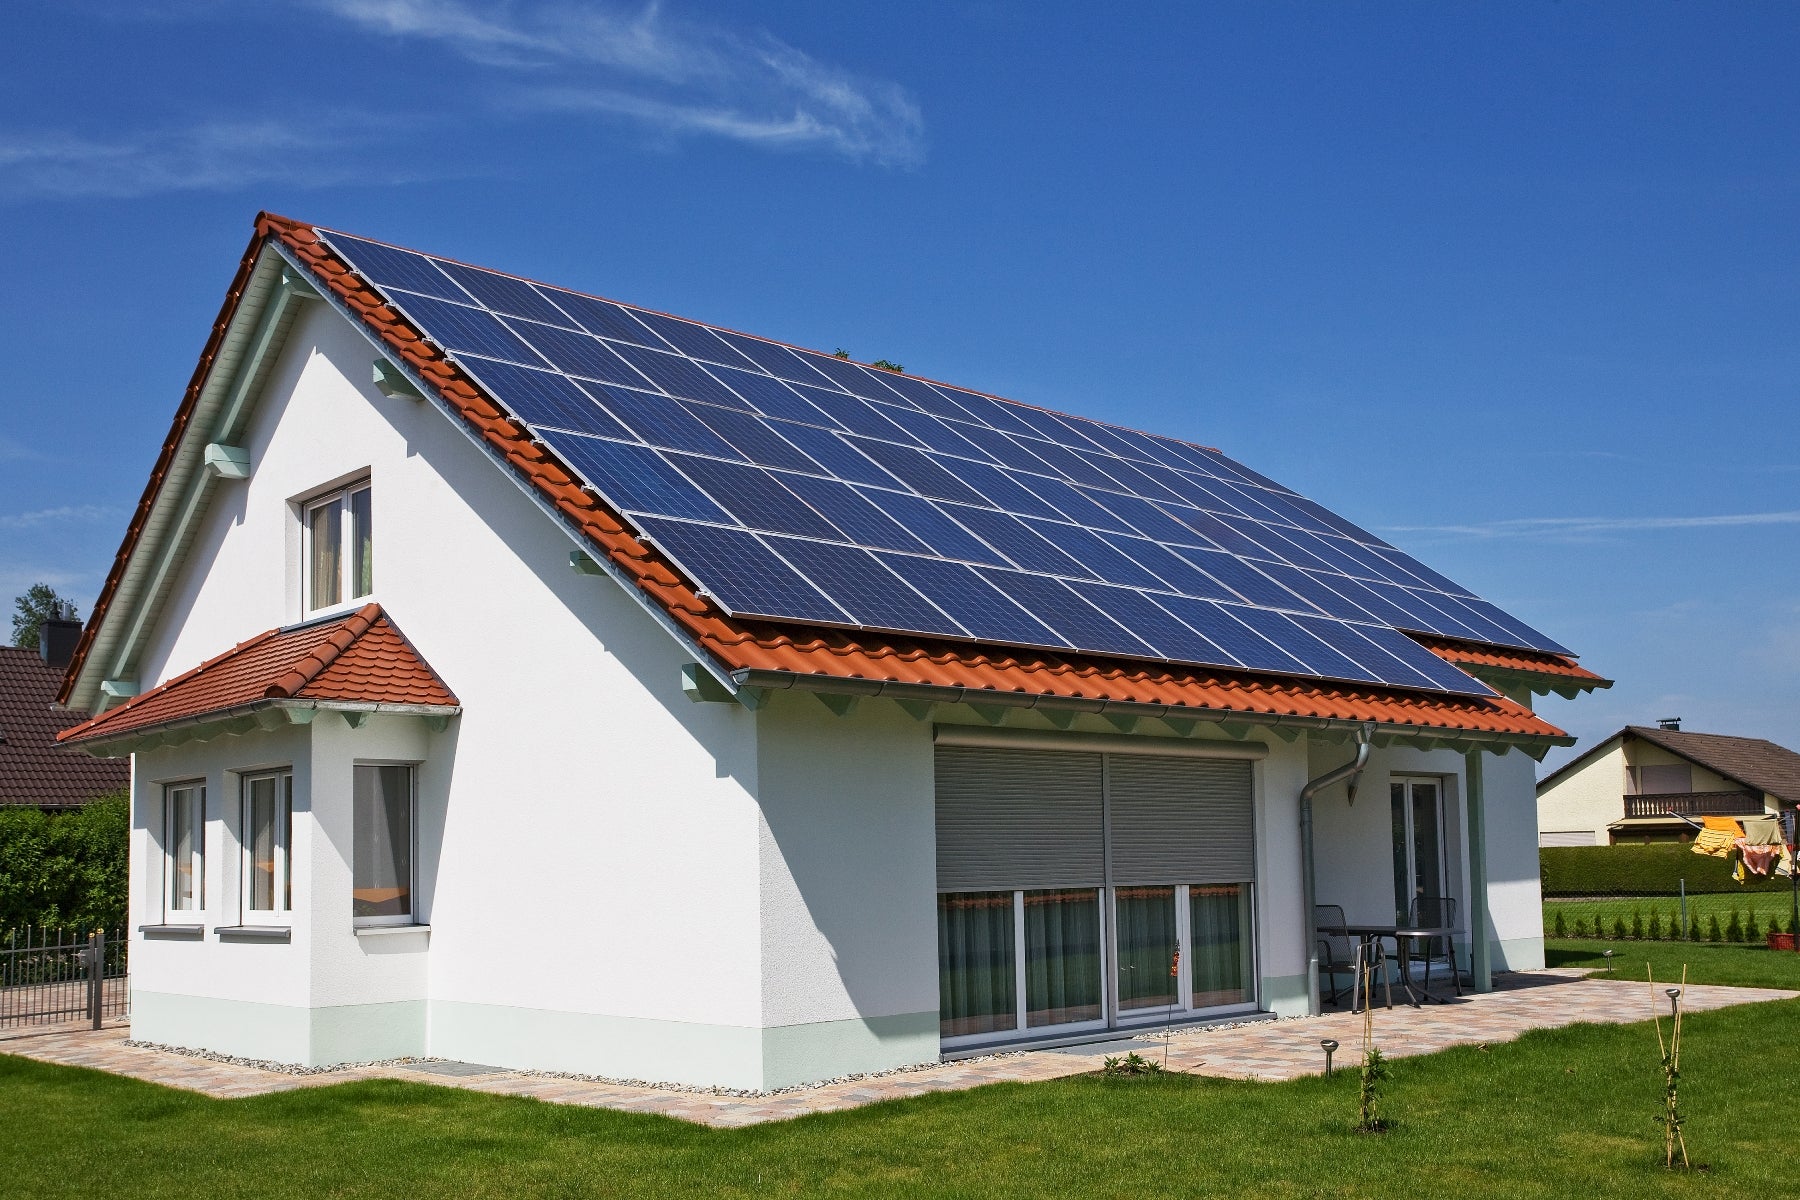 Cómo saber cuántos paneles solares necesito para una casa?